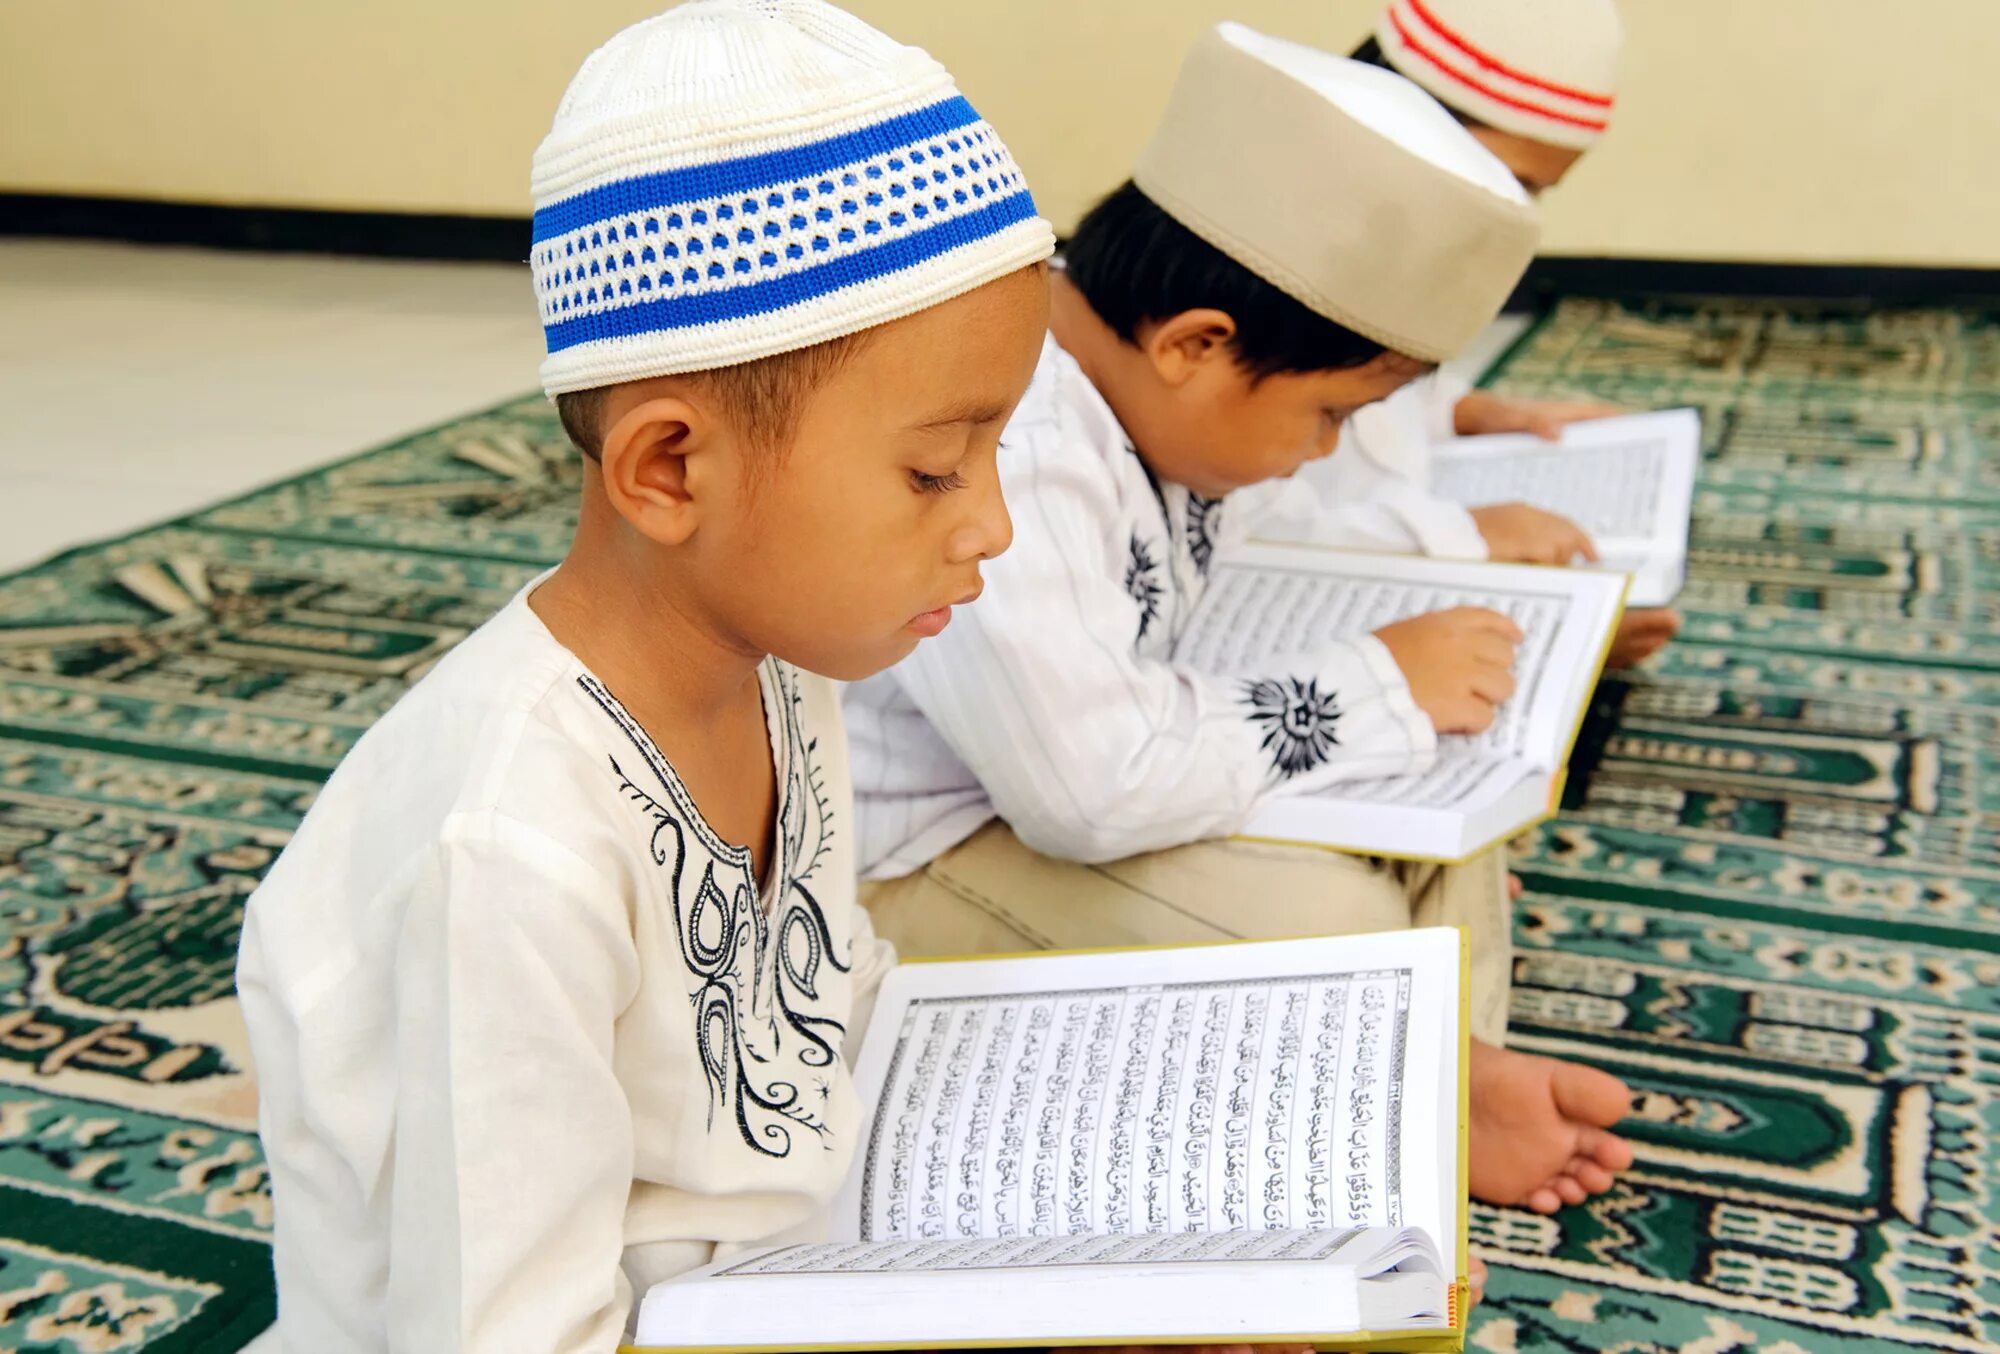 Мусульманских чтение. Традиции воспитания детей в Исламе. Мусульманские дети. Чтение Корана. Мусульманские дети в мечети.